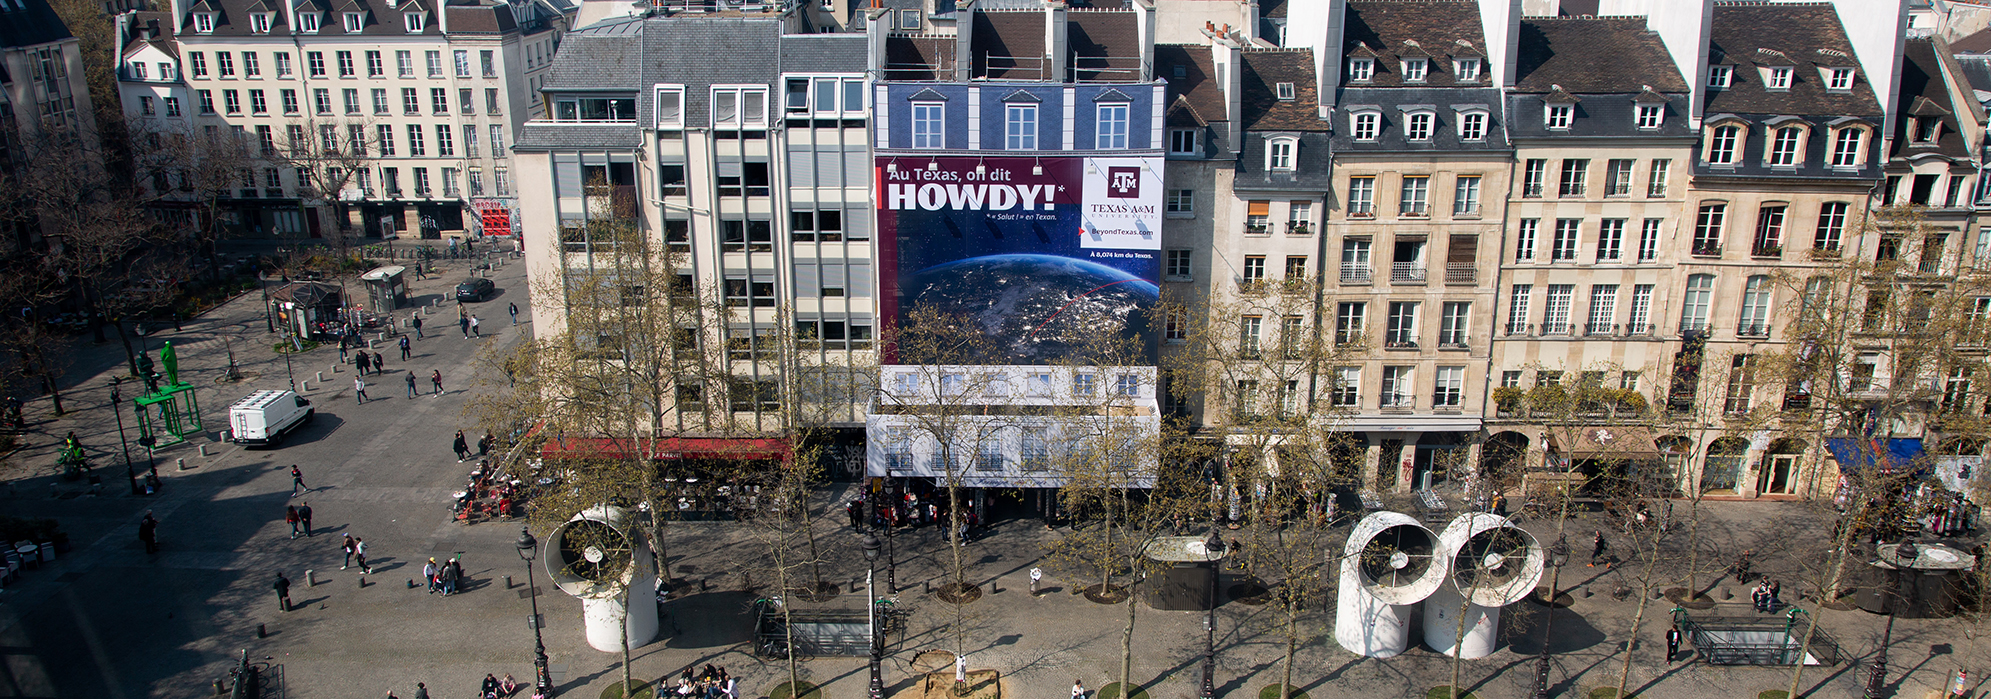 International Ad in Paris